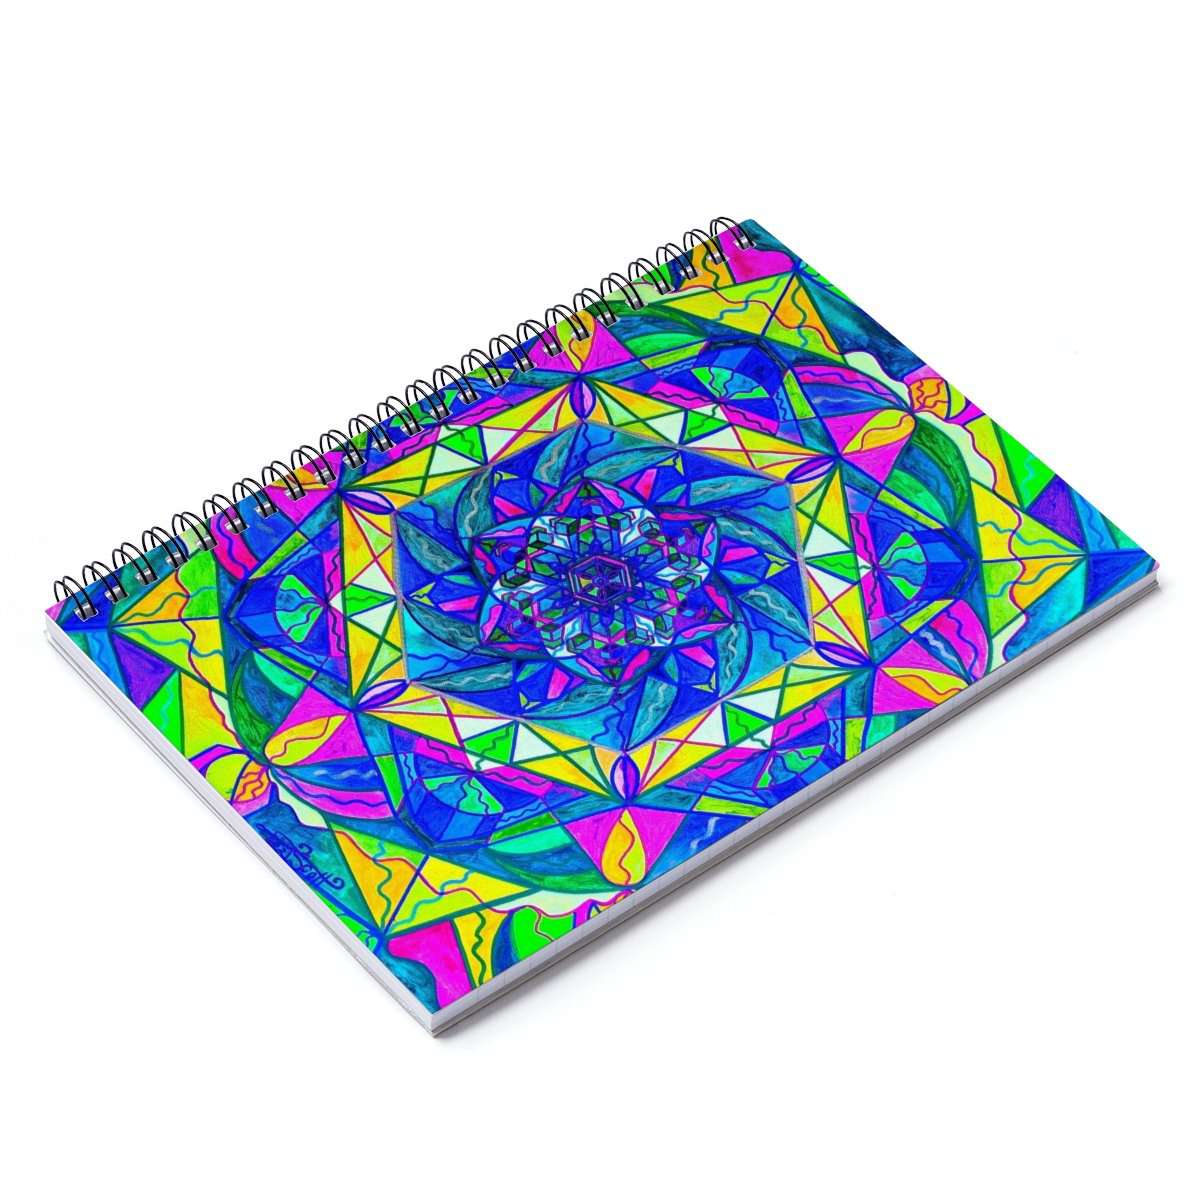 Positive Focus - Spiral Notebook